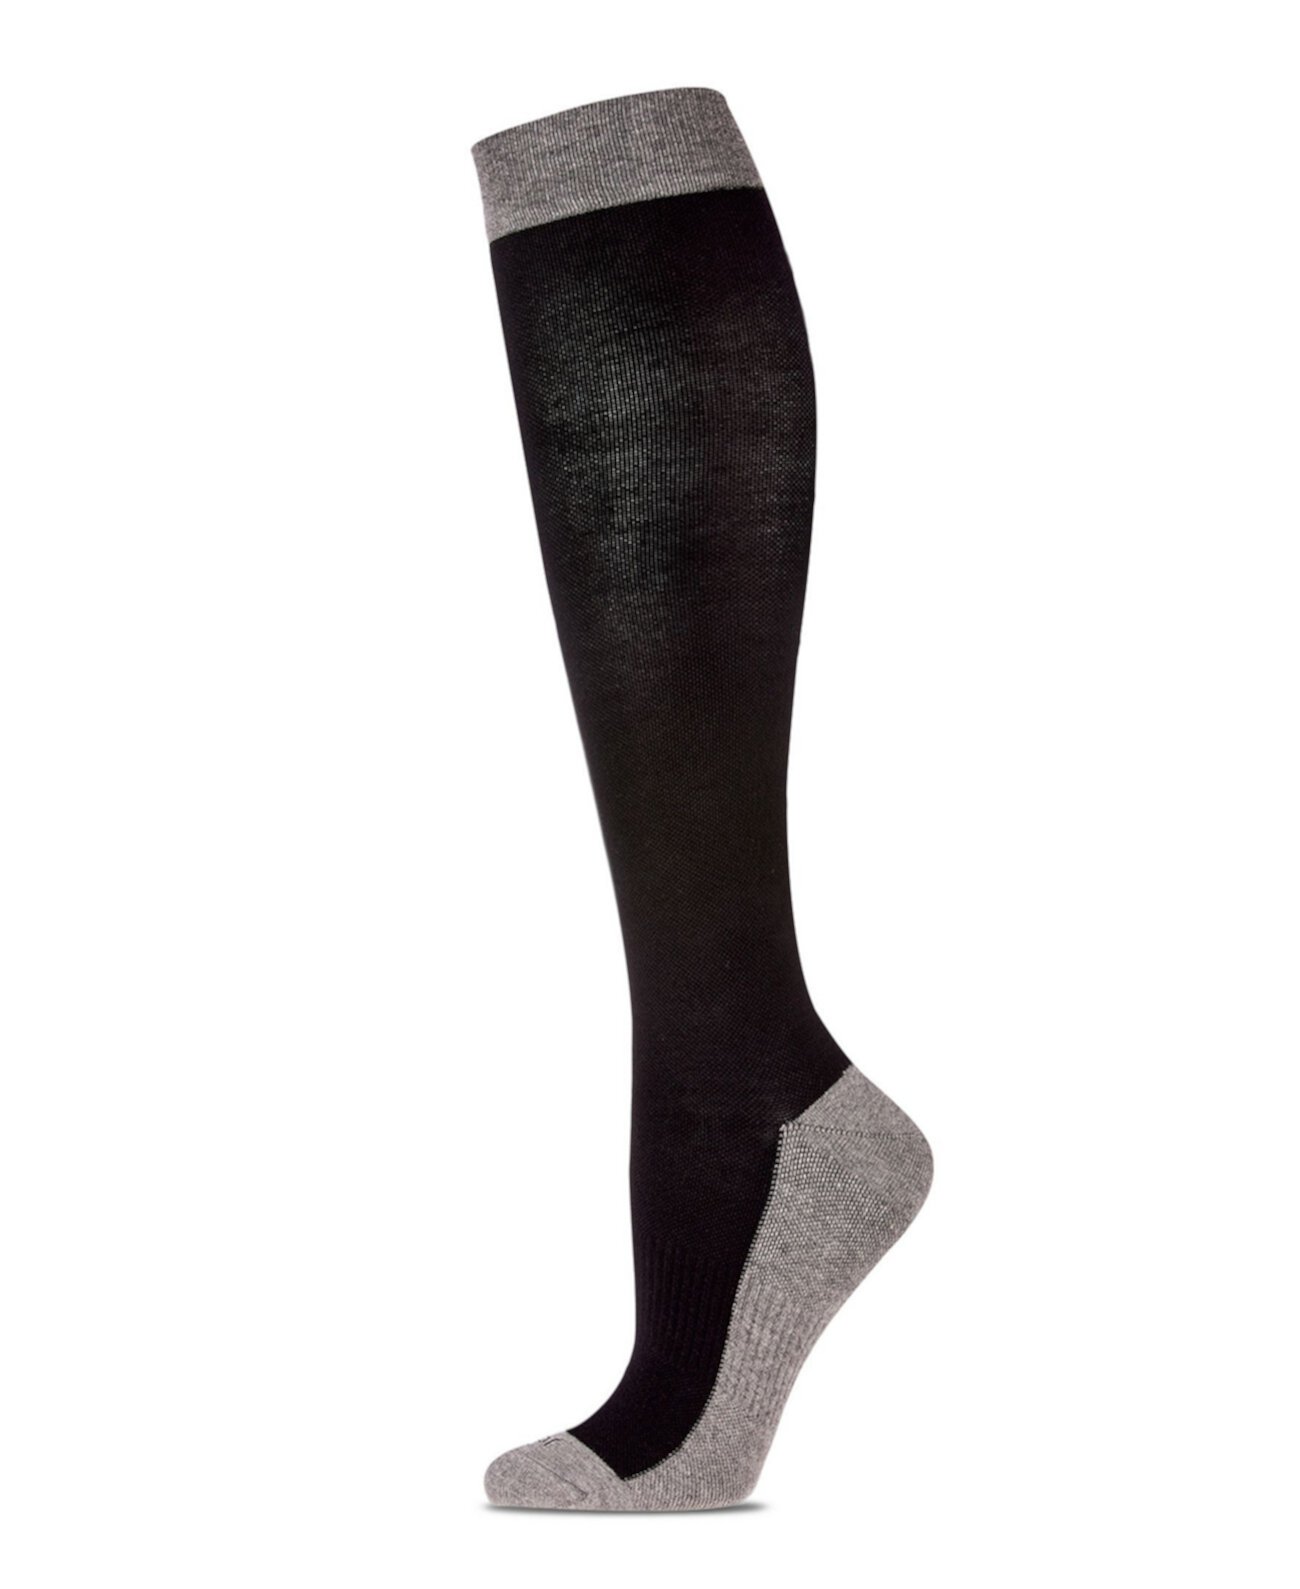 Двухцветные контрастные женские компрессионные носки MEMOI